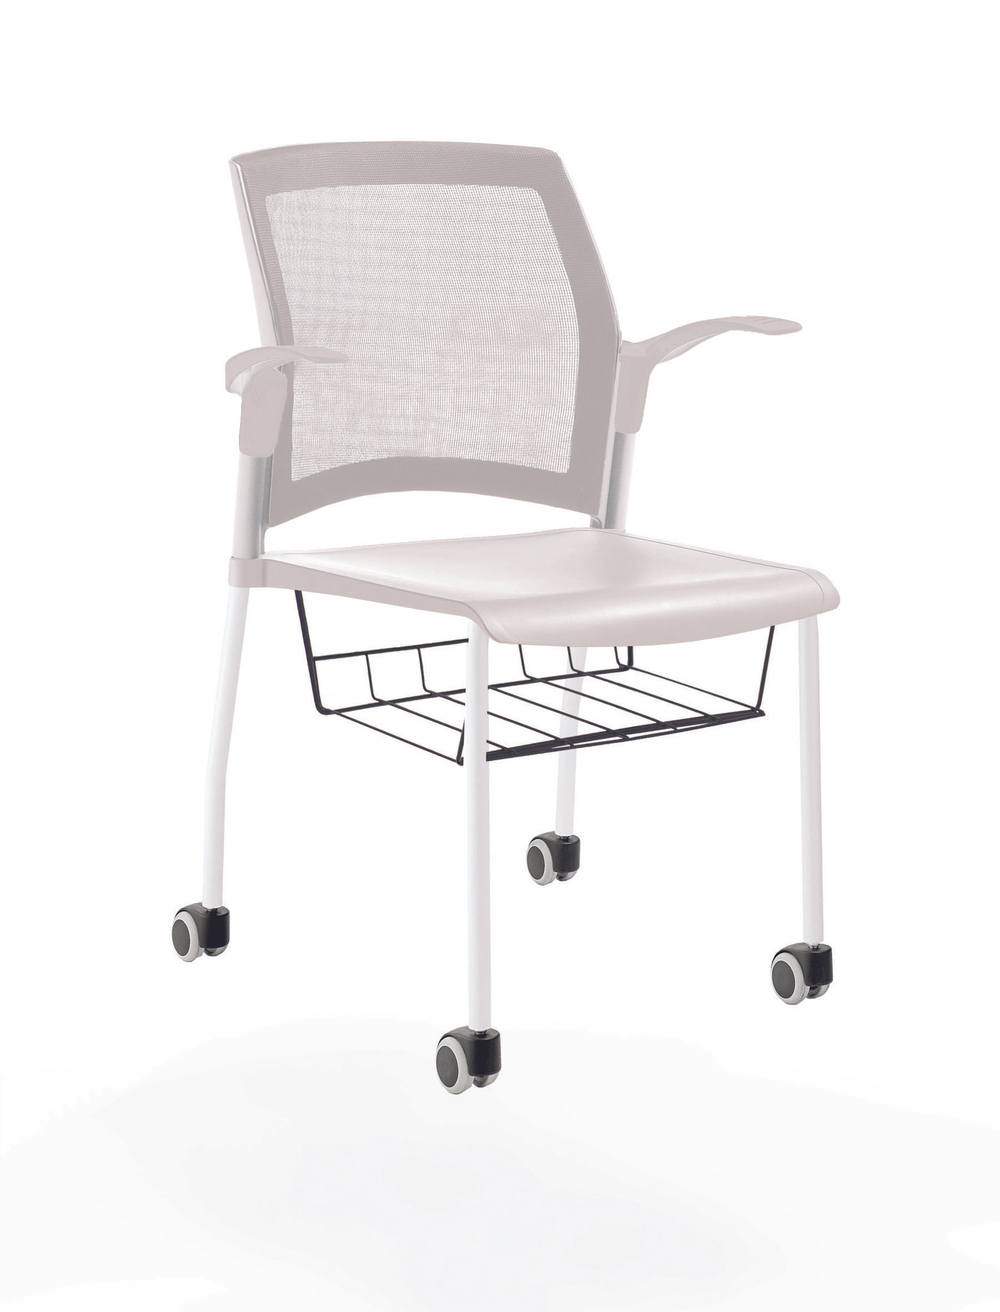 стул Rewind на 4 ногах и колесах, каркас белый, пластик белый, с открытыми подлокотниками, с подседельной корзиной, спинка-сетка